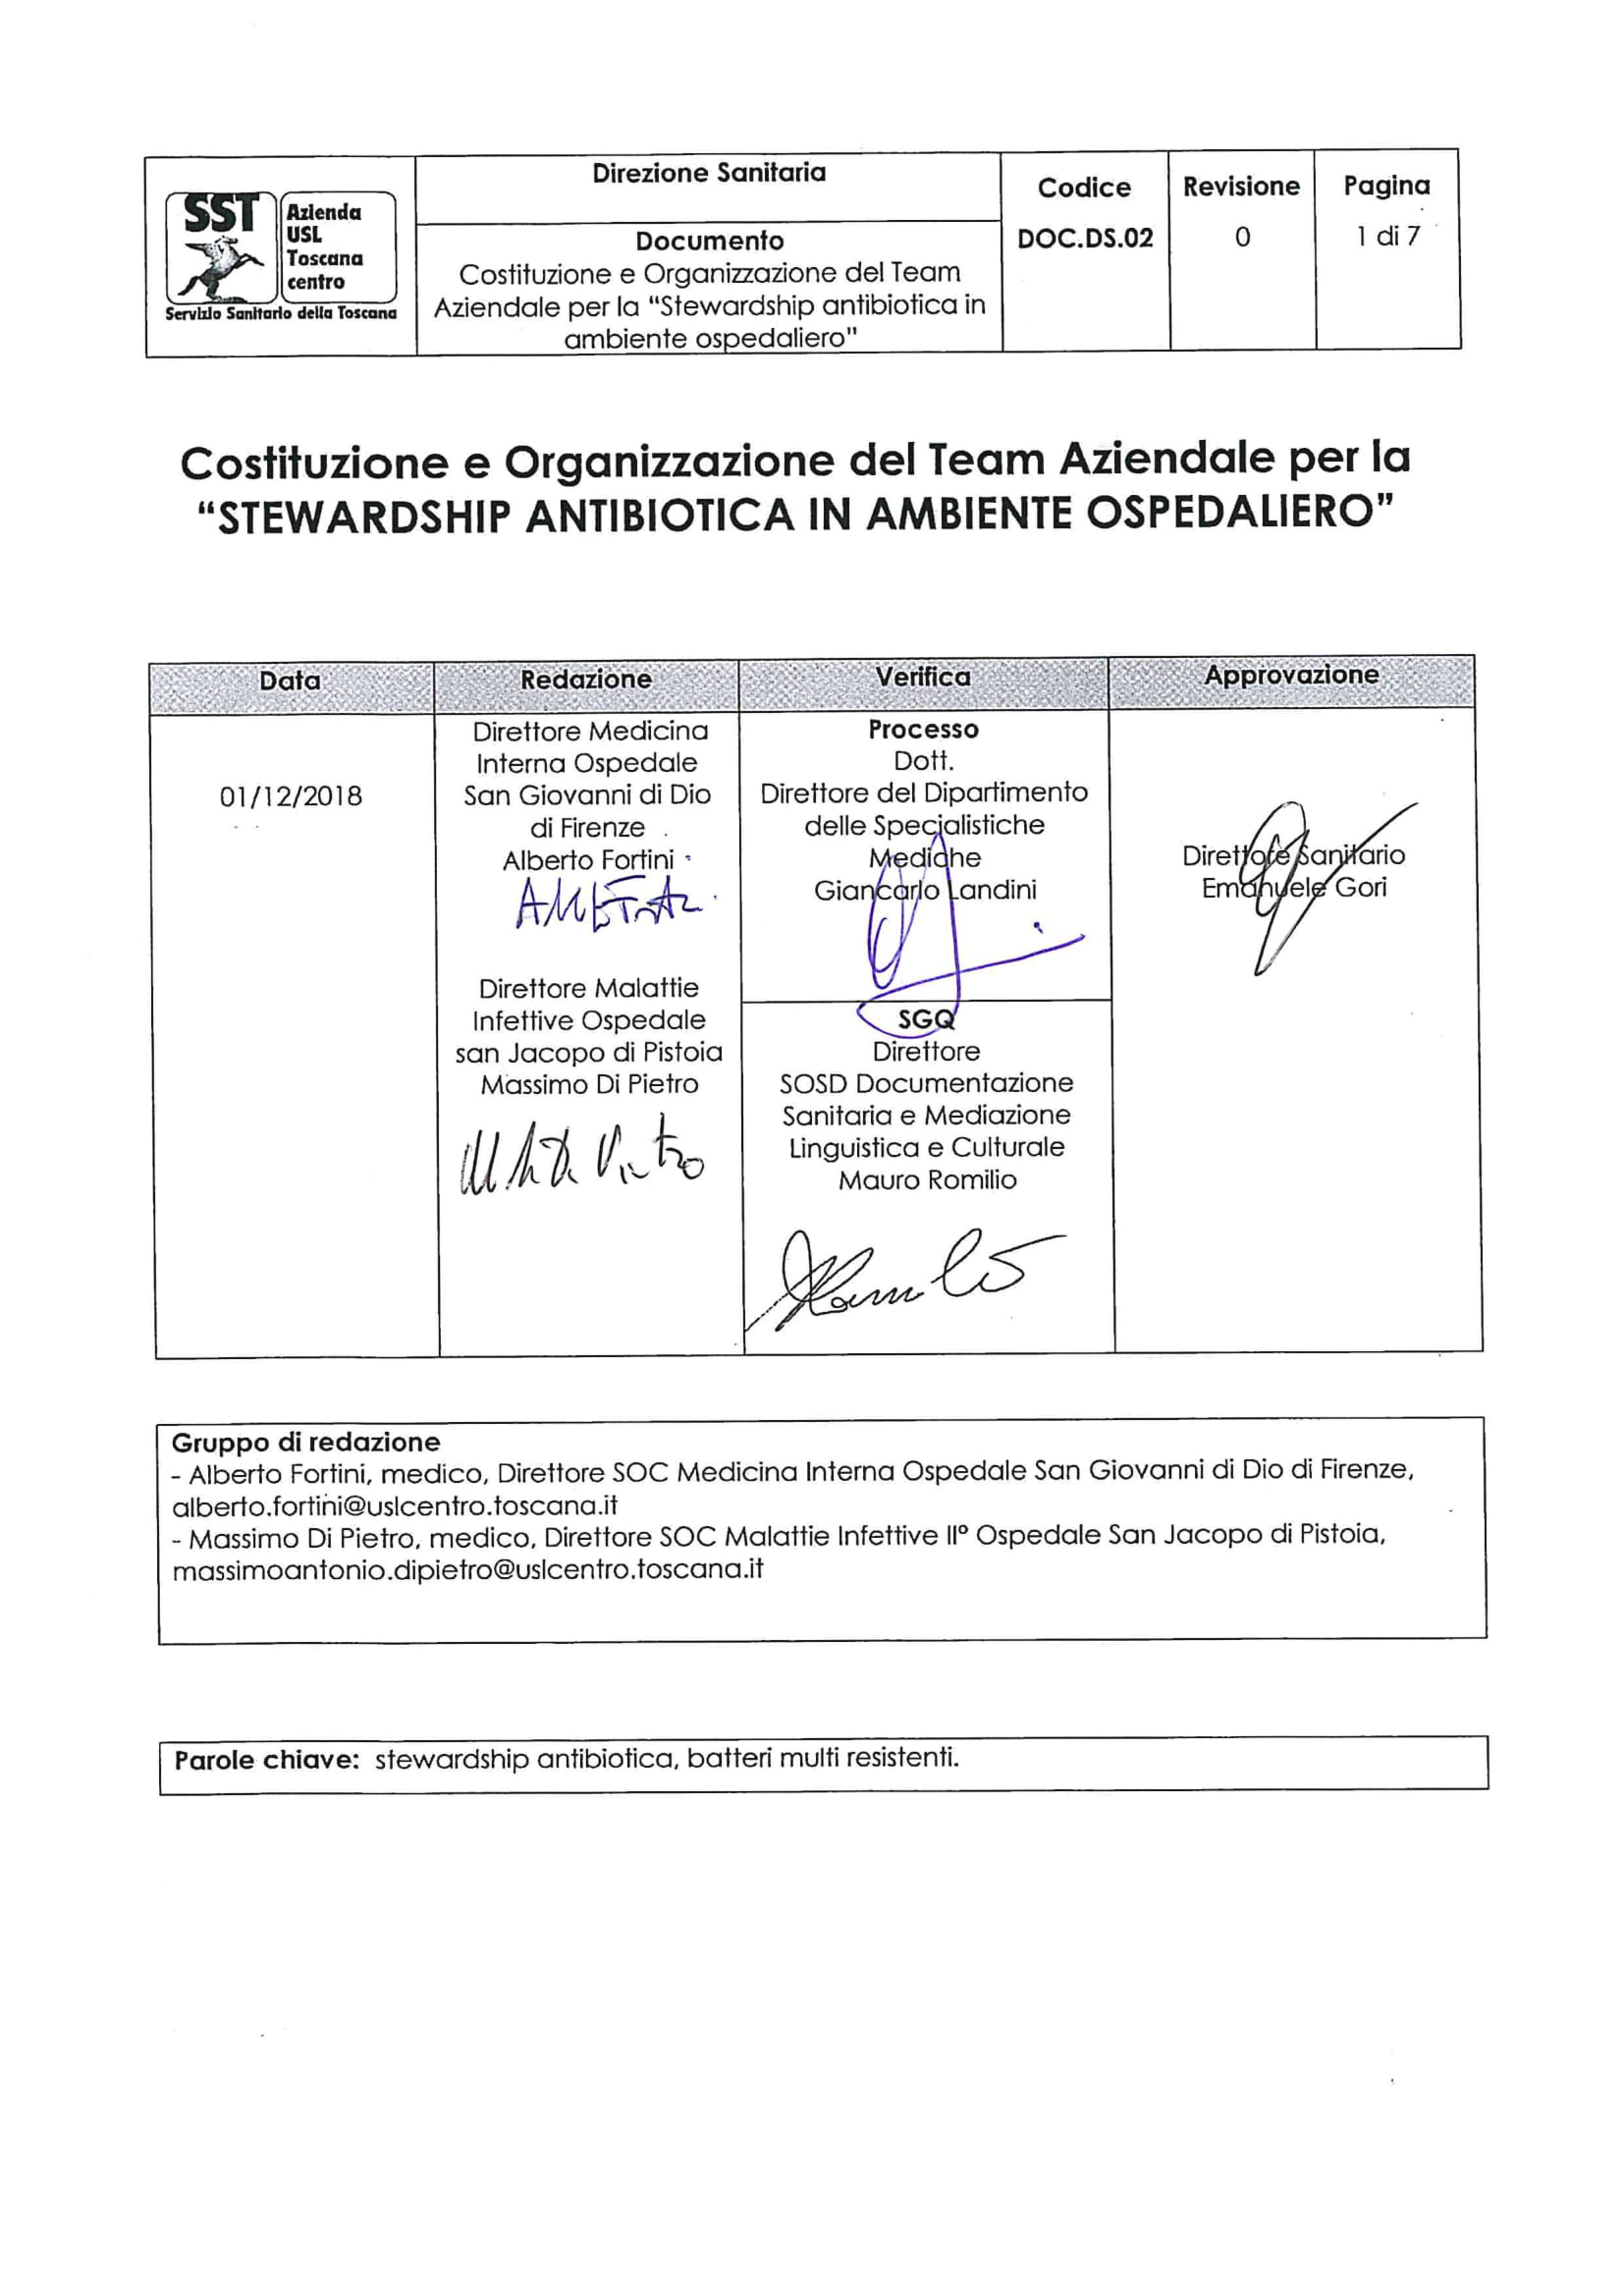 DOC.DS.02 Costituzione e Organizzazione del Team Aziendale per la “Stewardship antibiotica in ambiente ospedaliero”